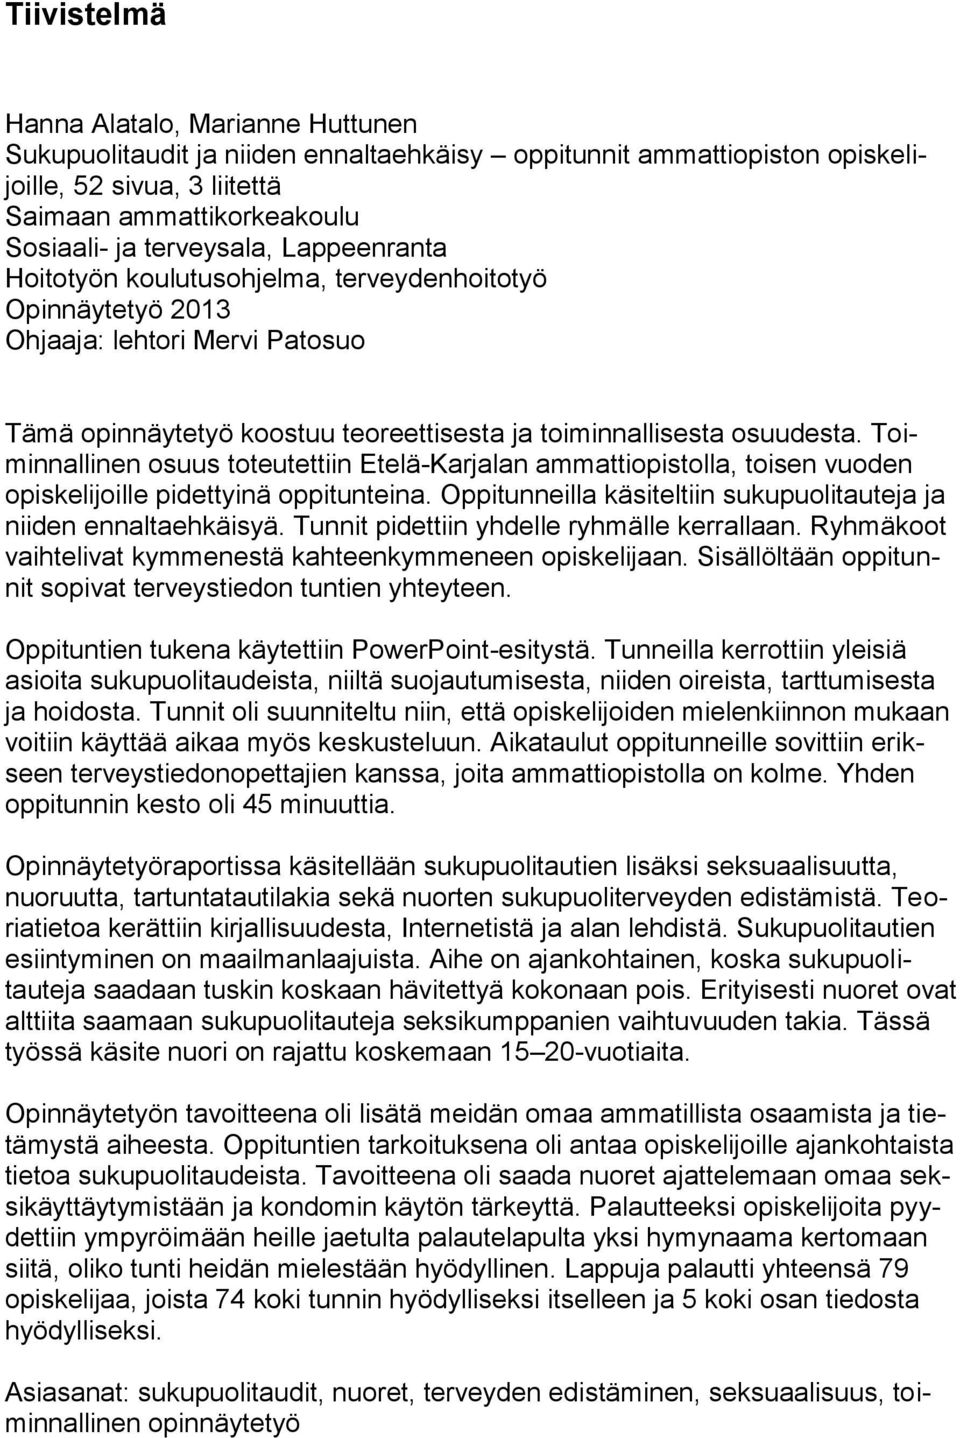 Toiminnallinen osuus toteutettiin Etelä-Karjalan ammattiopistolla, toisen vuoden opiskelijoille pidettyinä oppitunteina. Oppitunneilla käsiteltiin sukupuolitauteja ja niiden ennaltaehkäisyä.